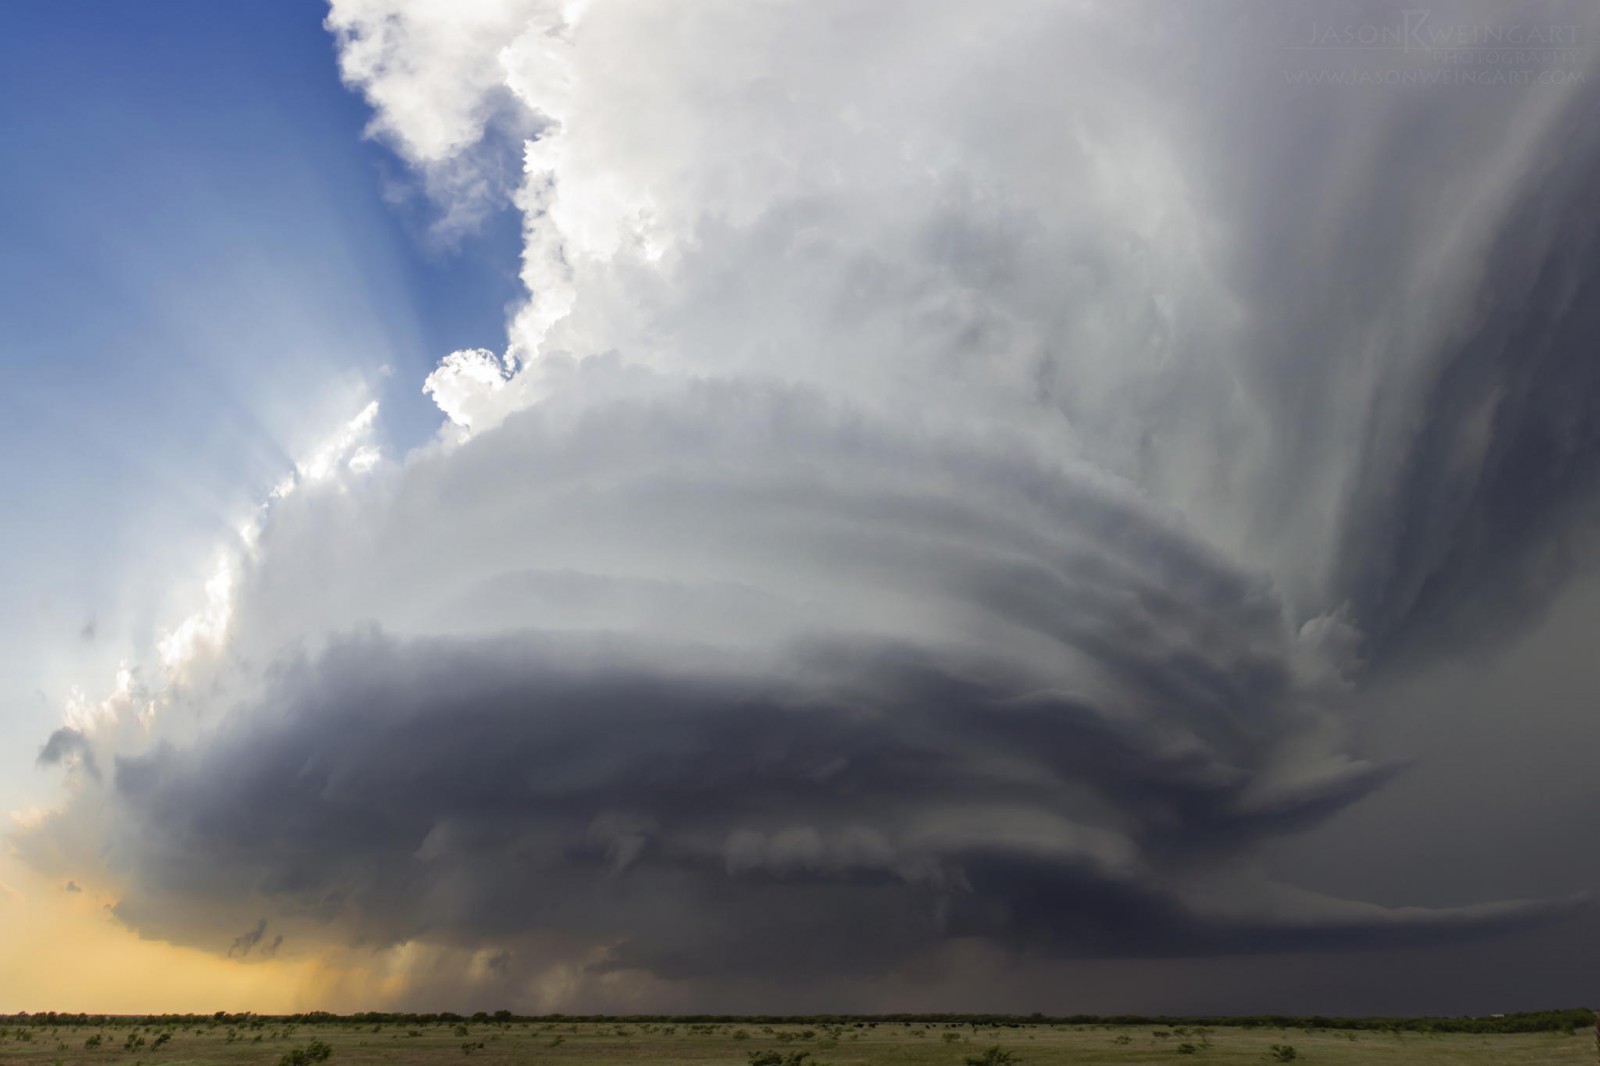 20 Εκπληκτικές φωτογραφίες από τον μεγαλύτερο κυνηγό καταιγίδων. Εντυπωσιακές. - Εικόνα 19